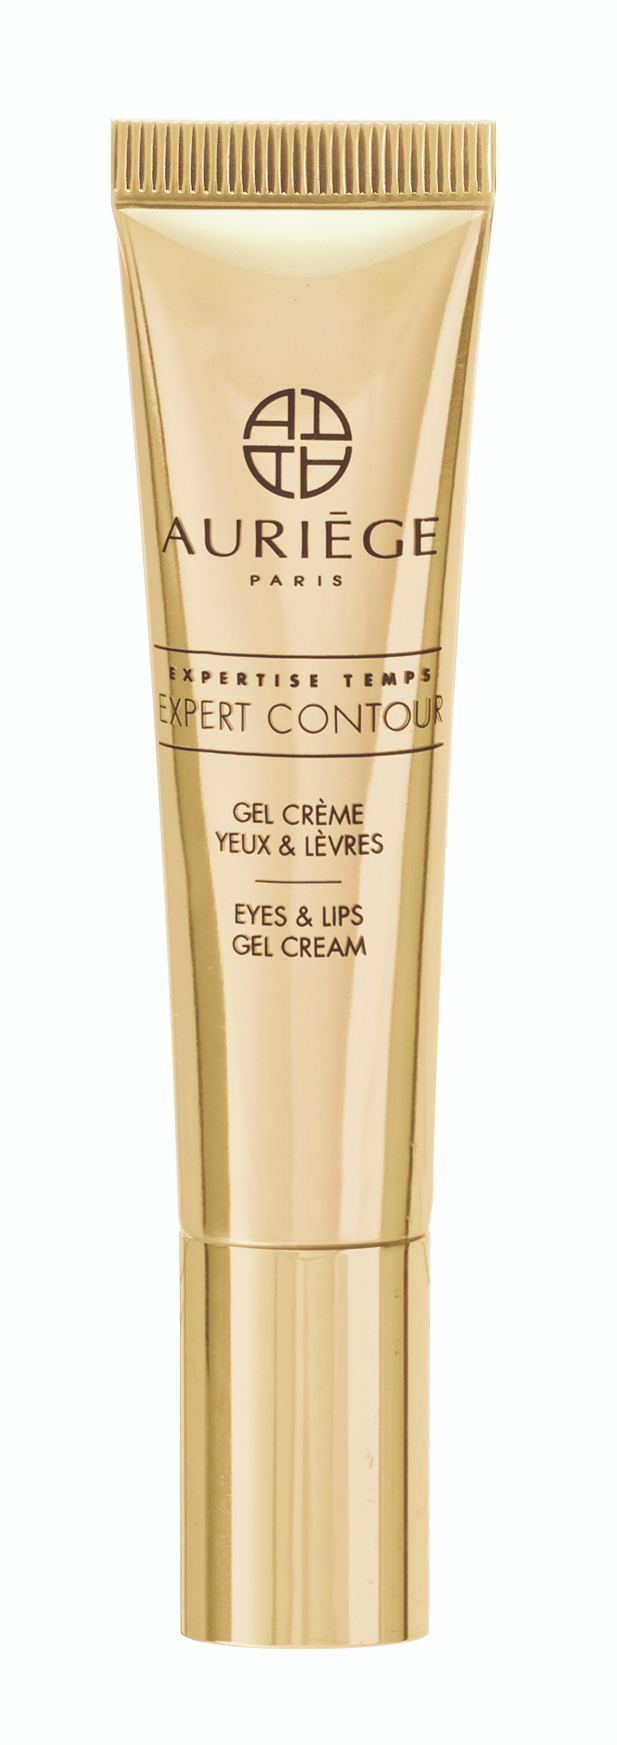 Gel Crème Contour Yeux & Lèvres